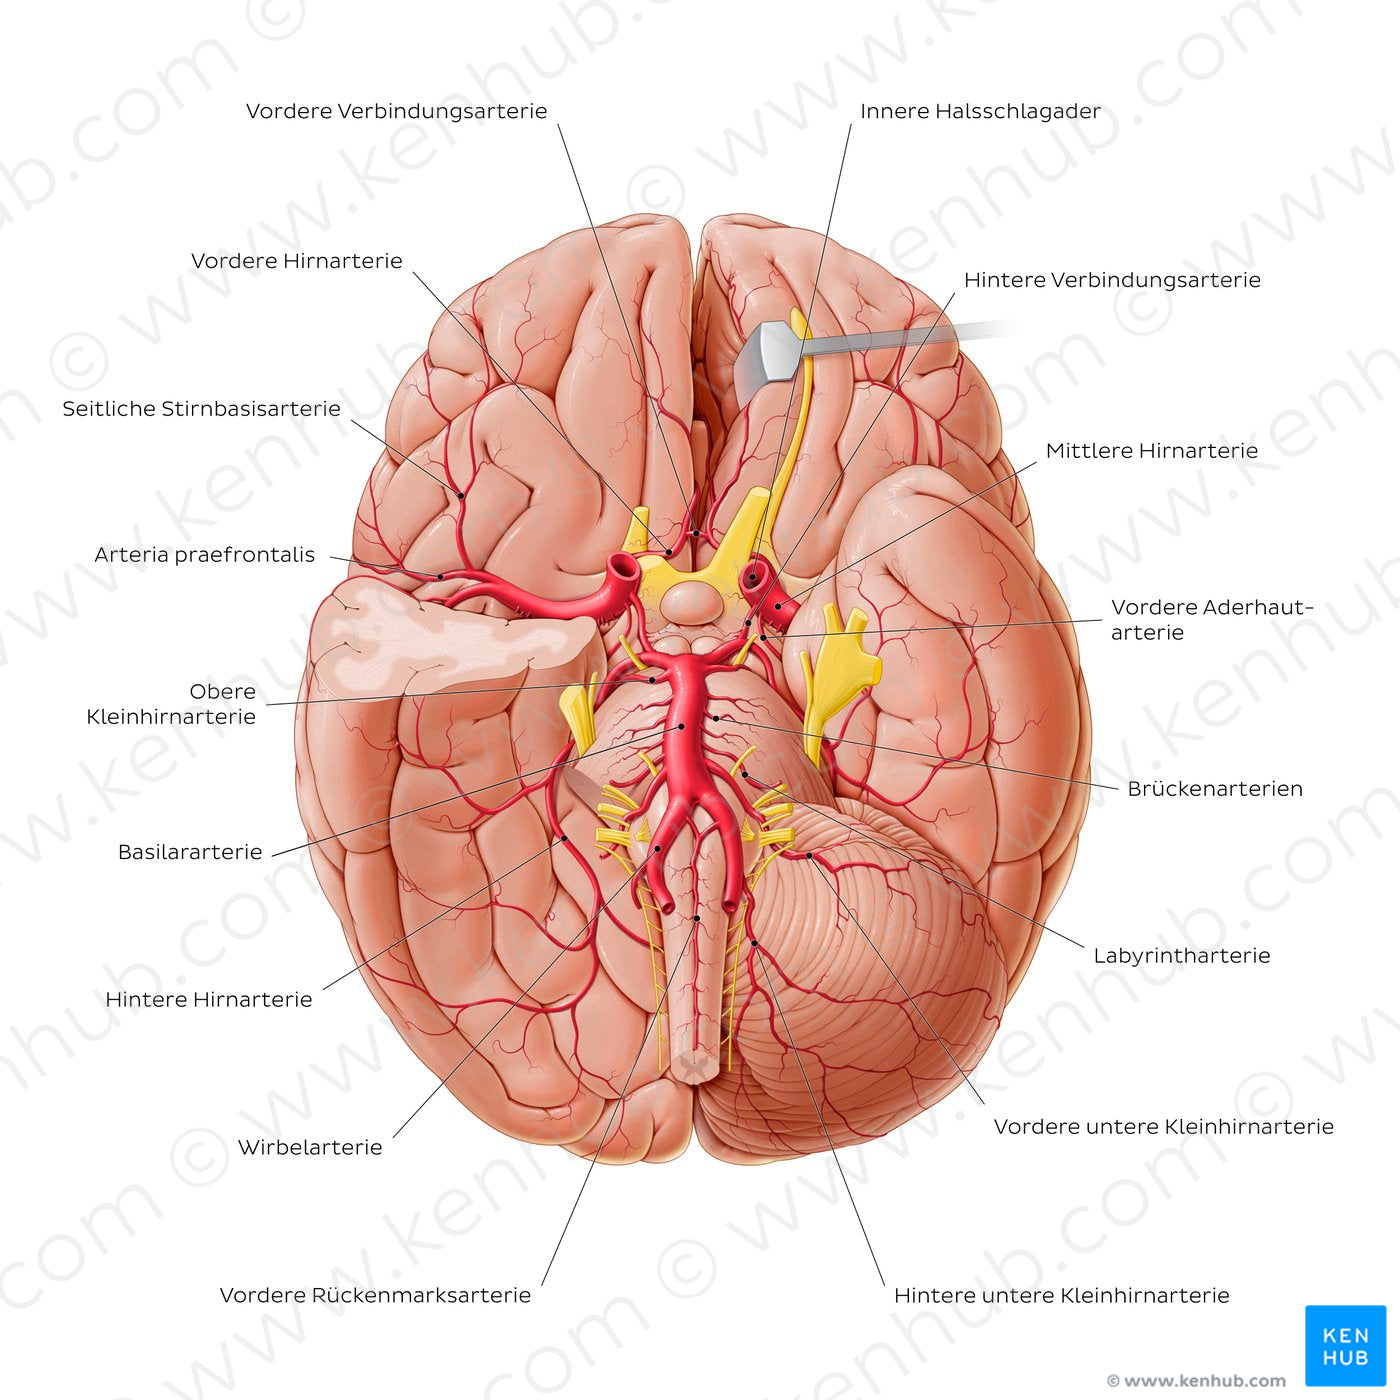 Arteries of the brain II (German)